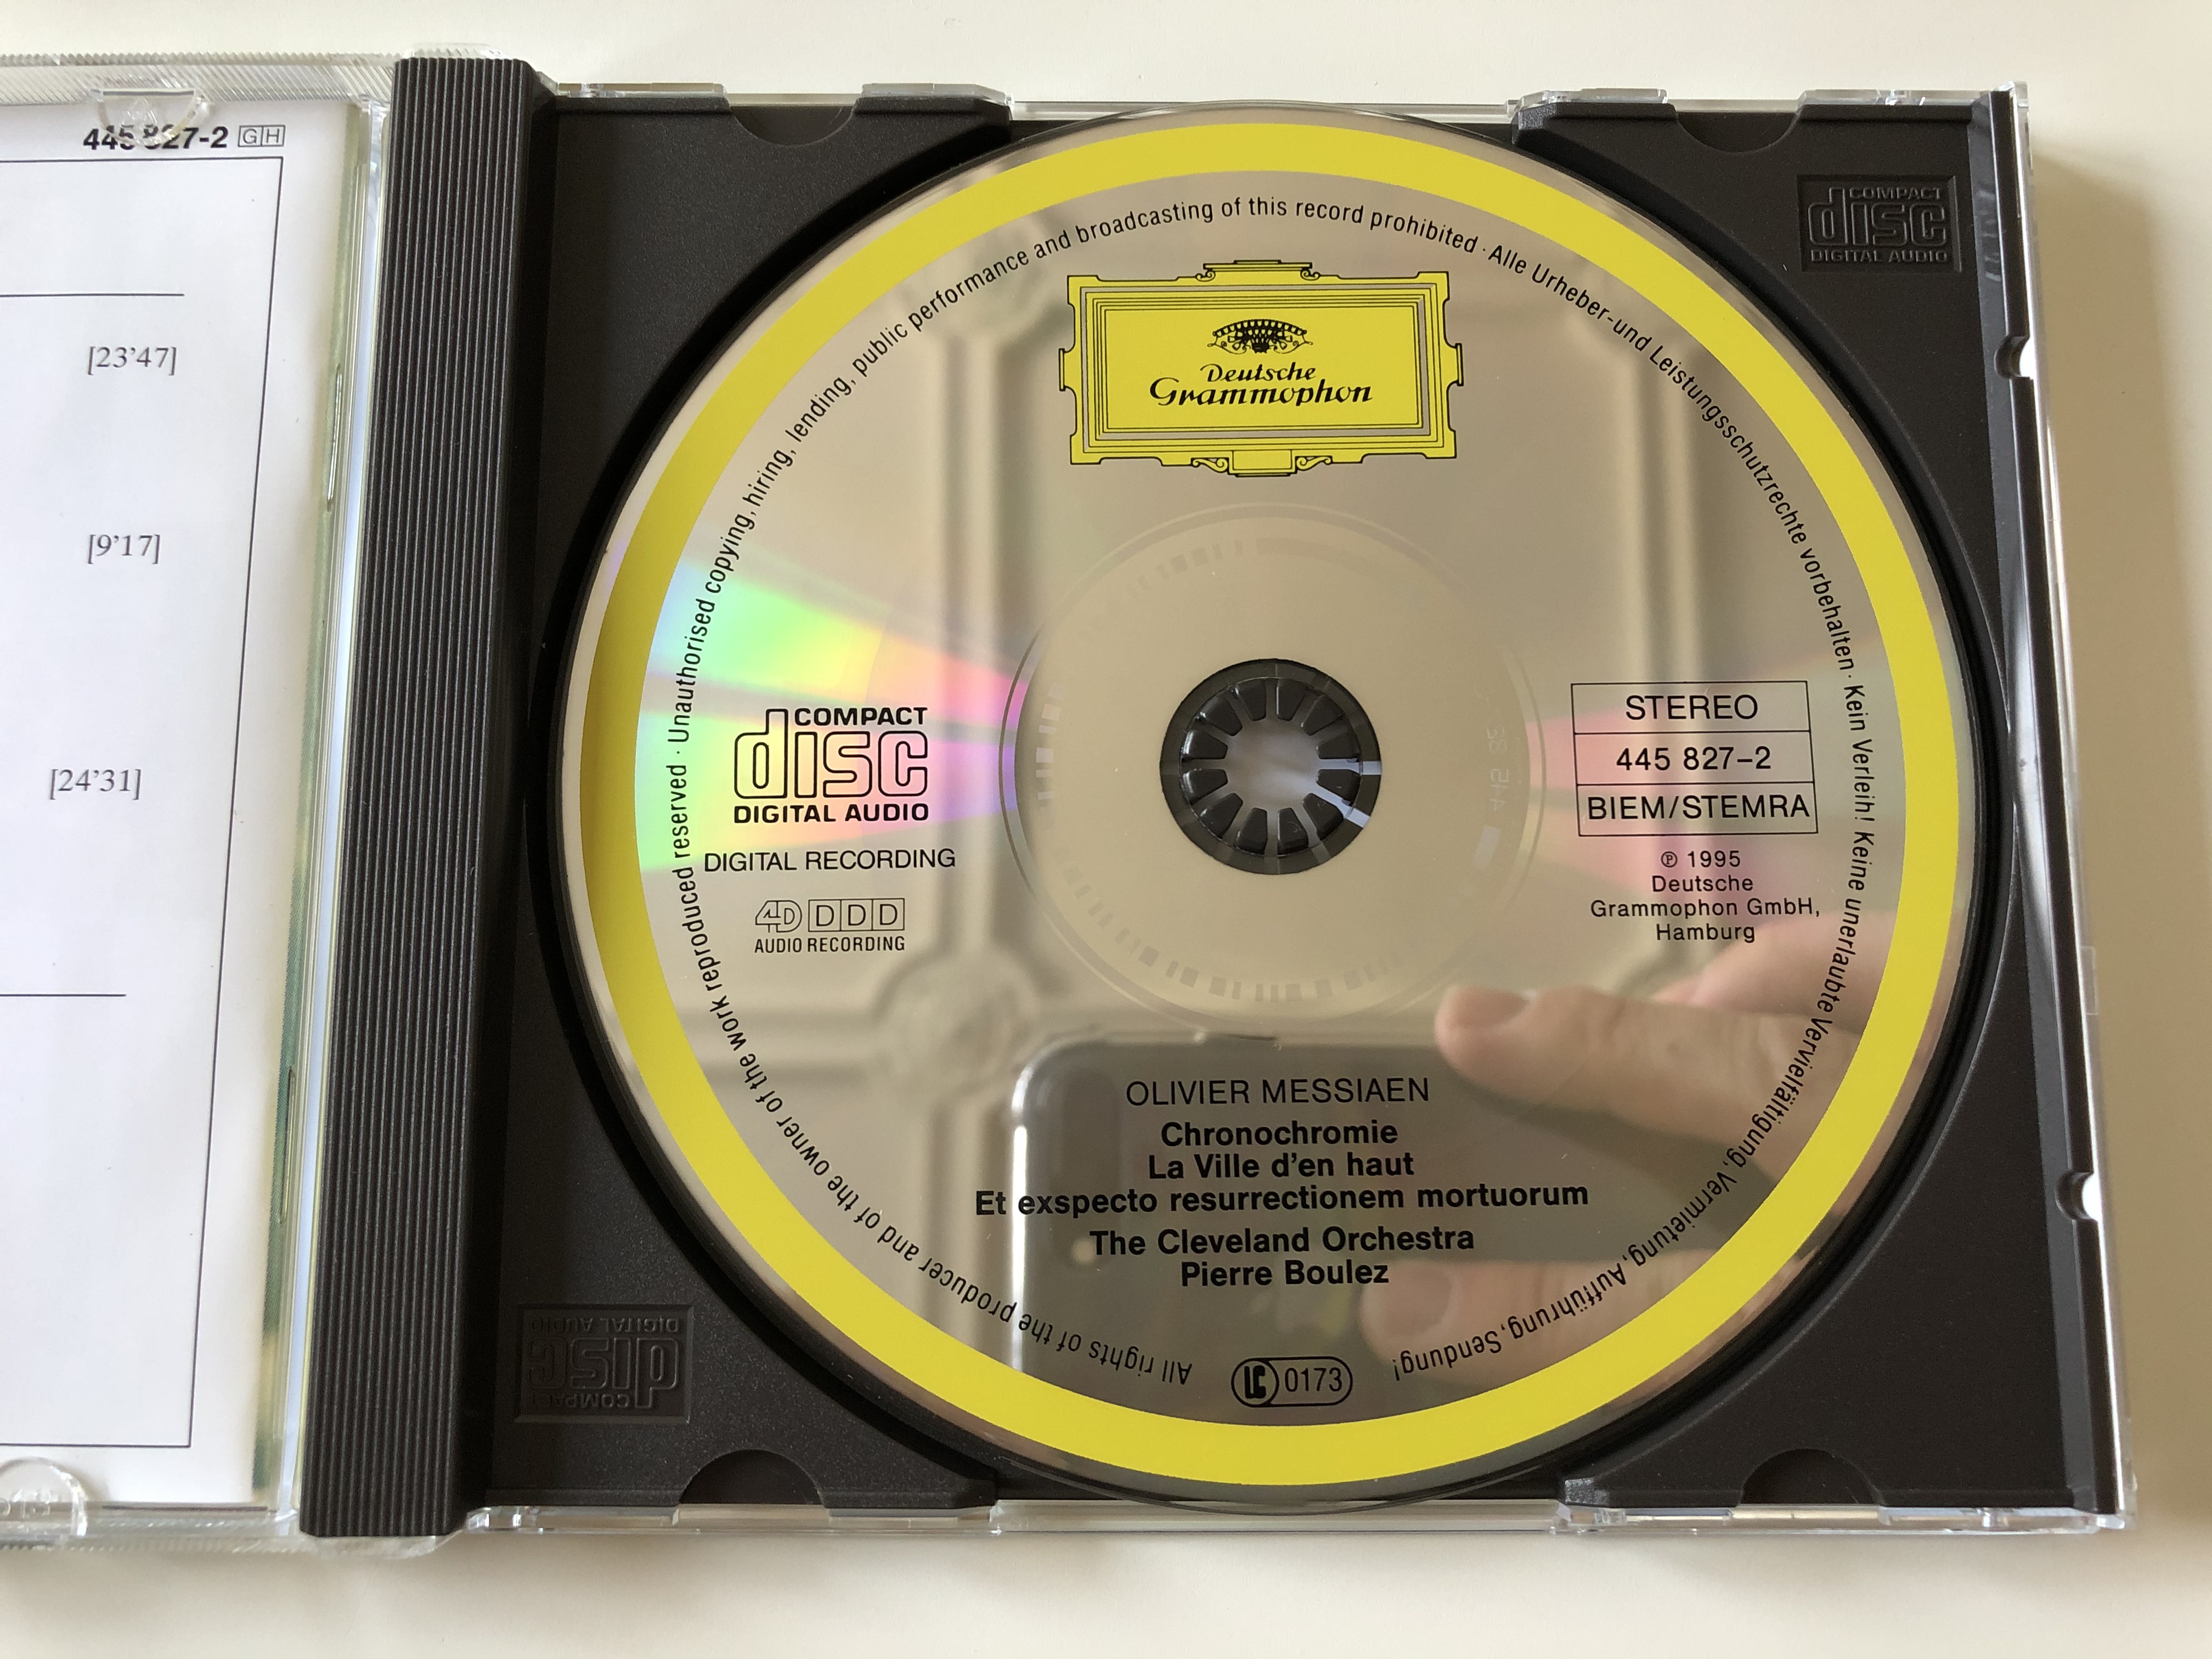 olivier-messiaen-et-exspecto-resurrectionem-mortuorum-chronochromie-la-ville-d-en-haut-the-cleveland-orchestra-pierre-boulez-deutsche-grammophon-audio-cd-1995-stereo-445-827-2-6-.jpg